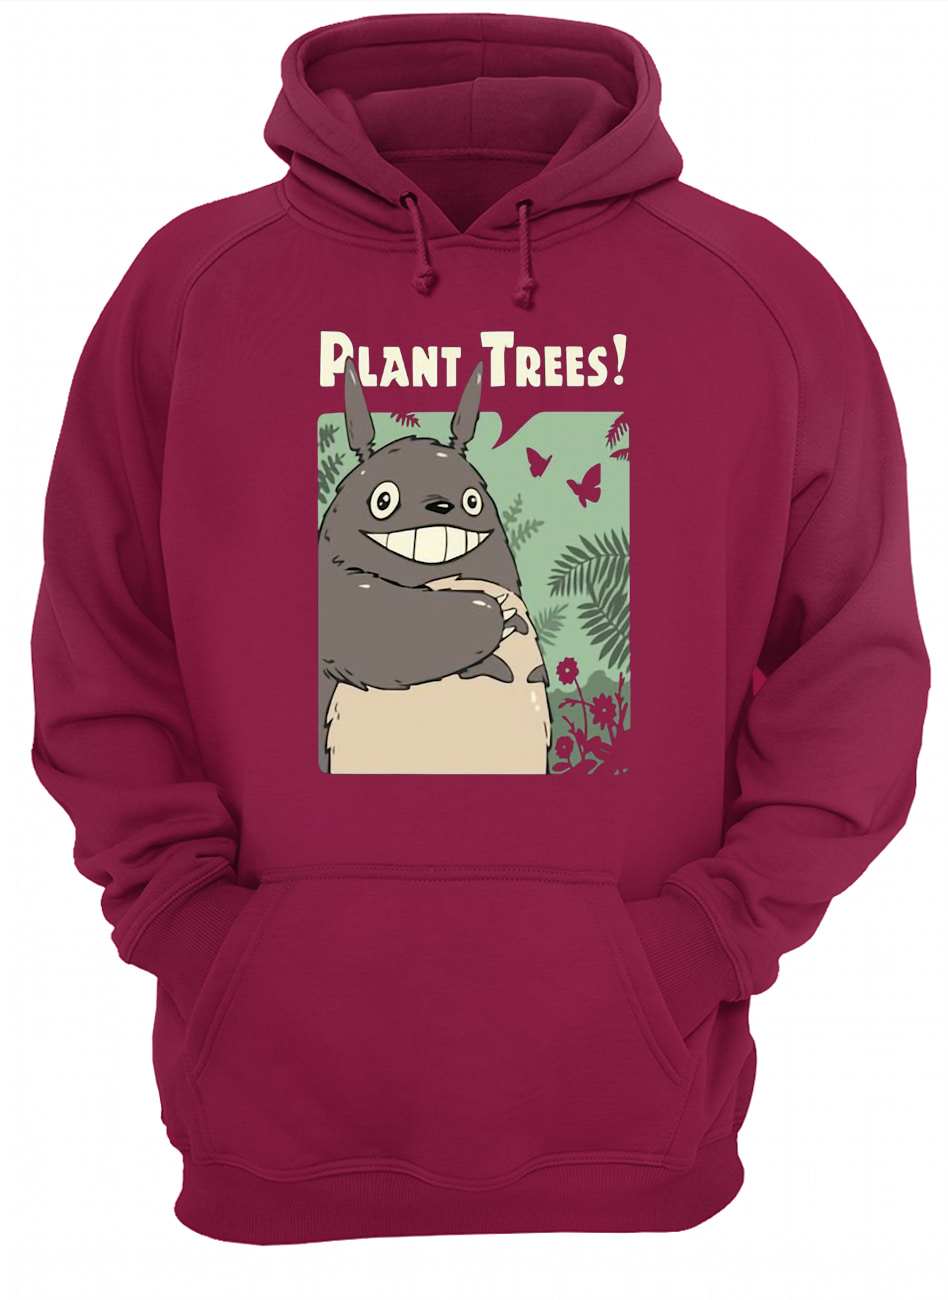 Totoro studio ghibli plant trees hoodie